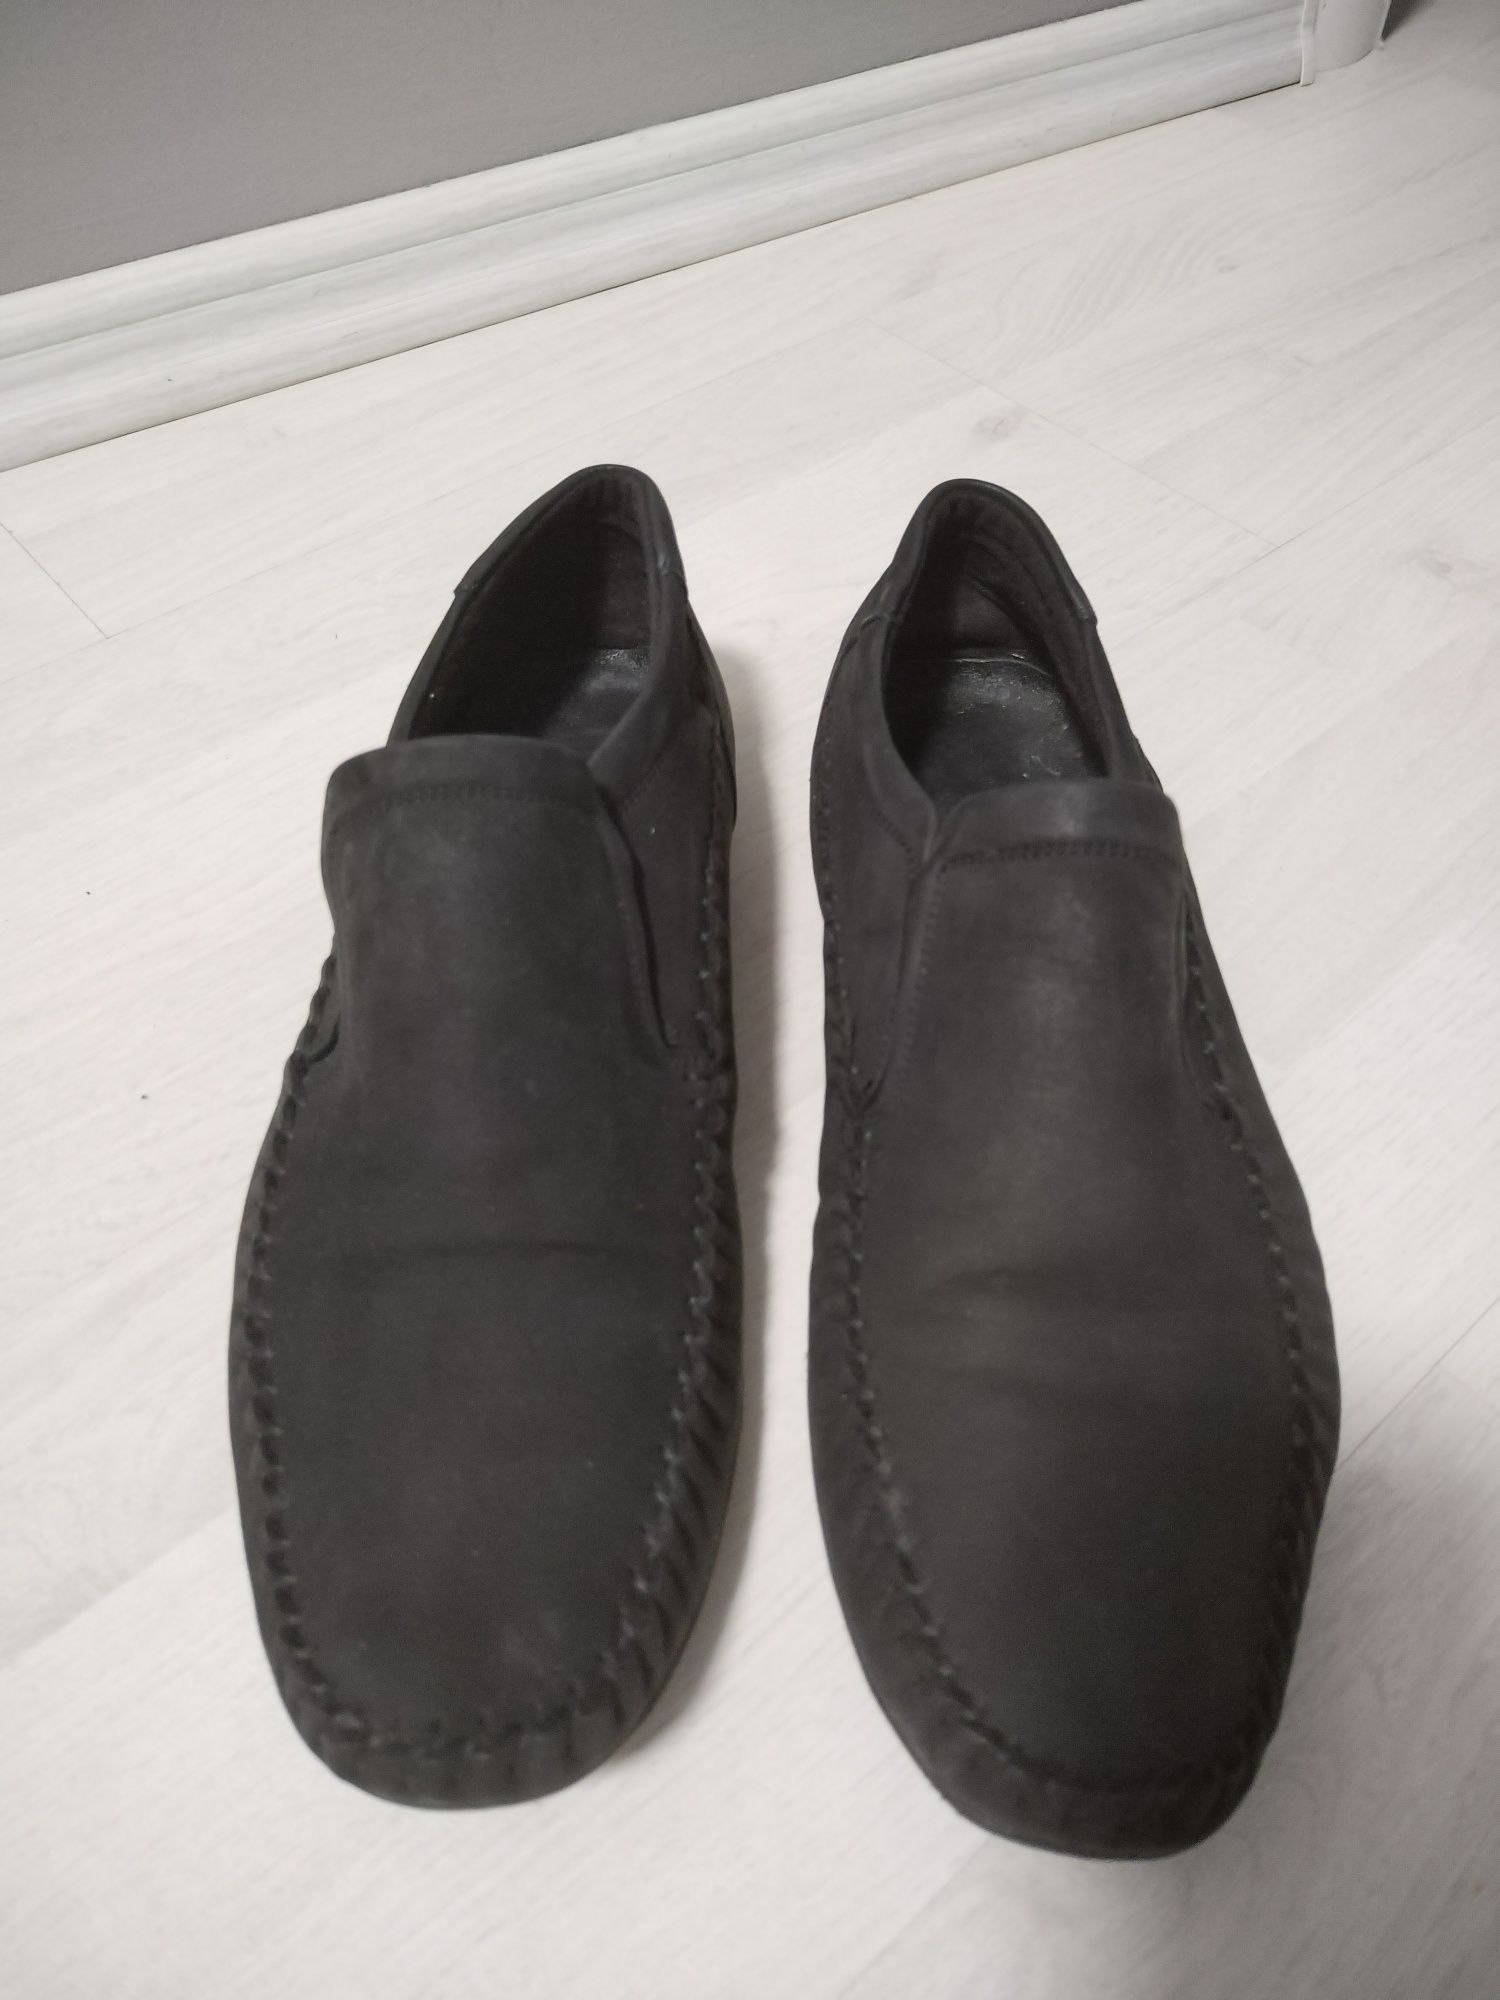 Pantofi barbati piele naturala casual/eleganti 42-43